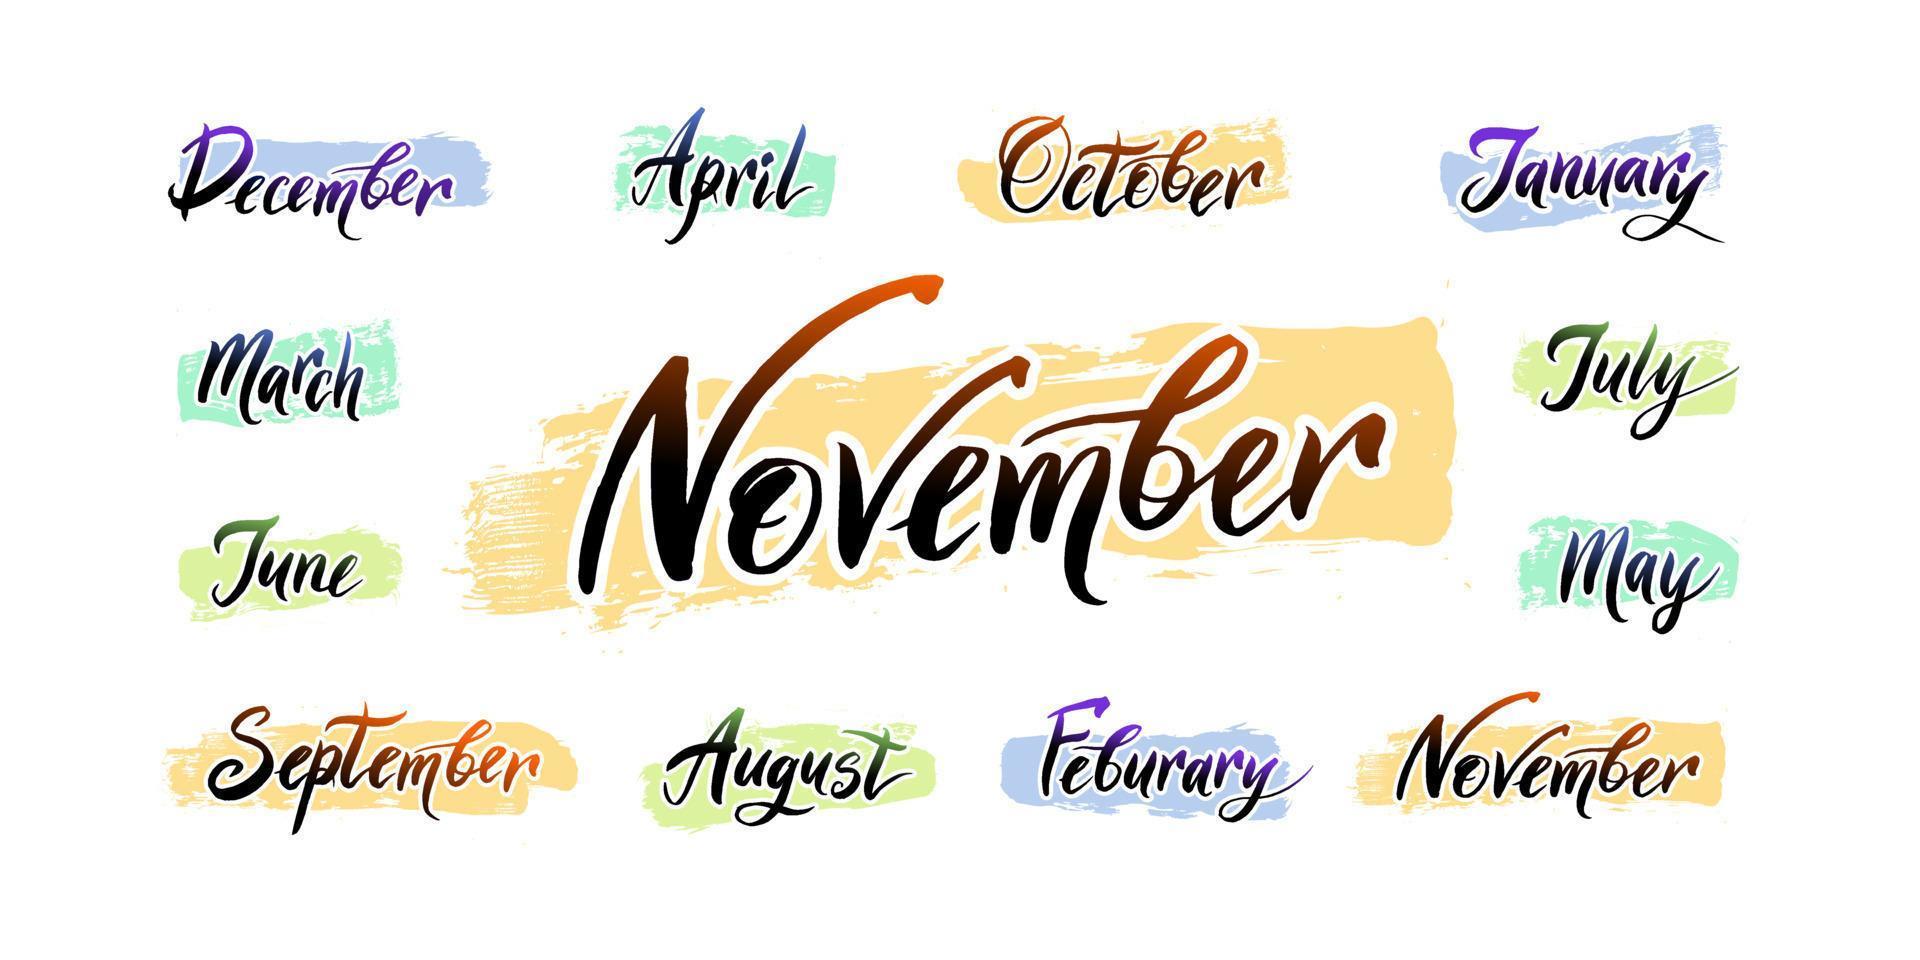 les noms manuscrits des mois décembre, janvier, février, mars, avril, mai, juin, juillet, août, septembre, octobre, novembre. vecteur